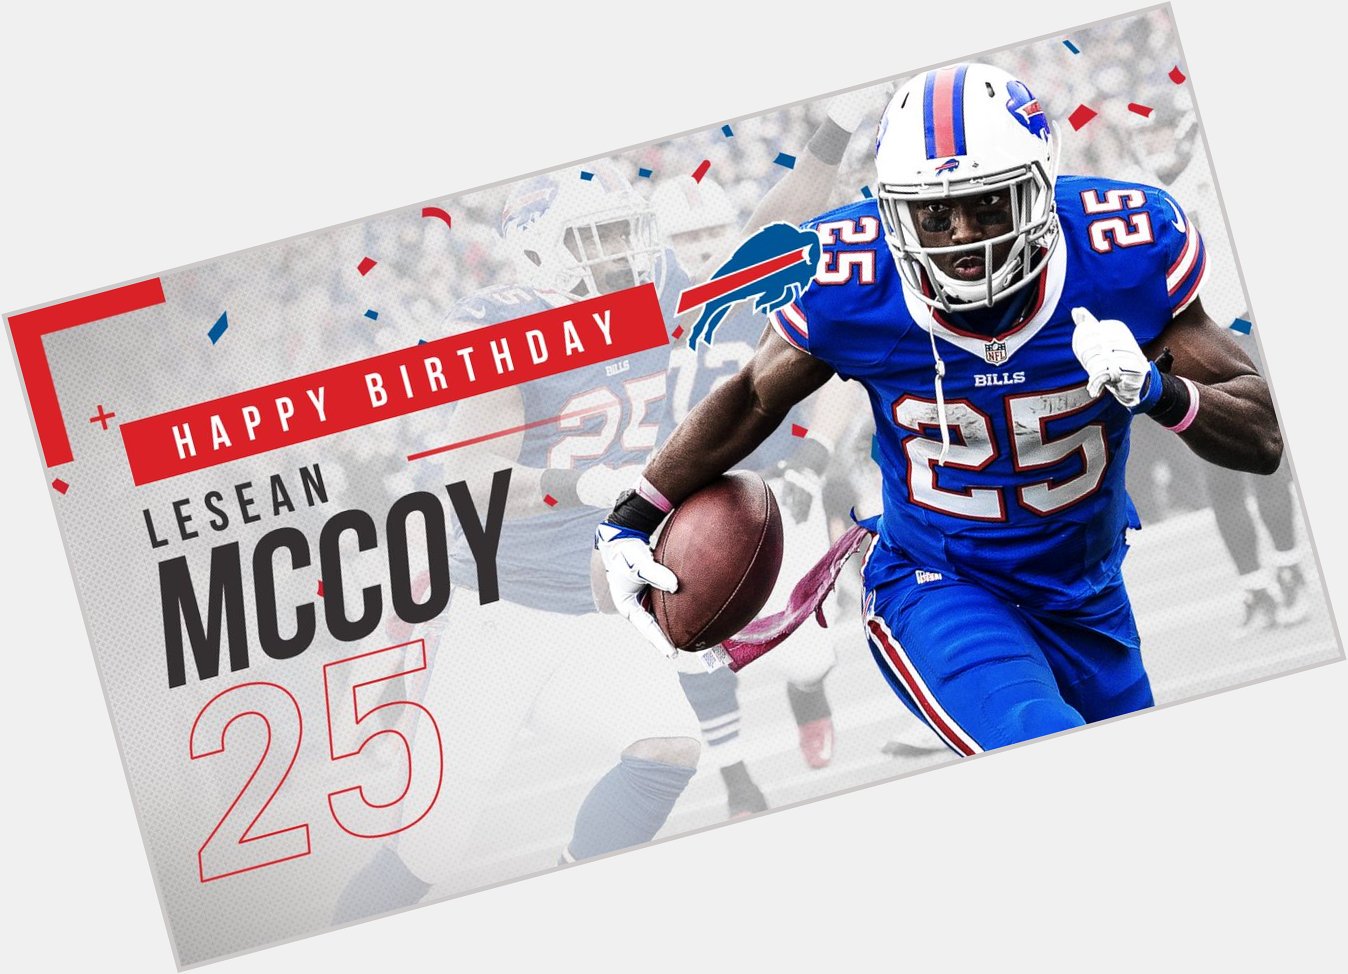 Shady! Shady! Shady!

Happy 29th birthday to LeSean McCoy! 